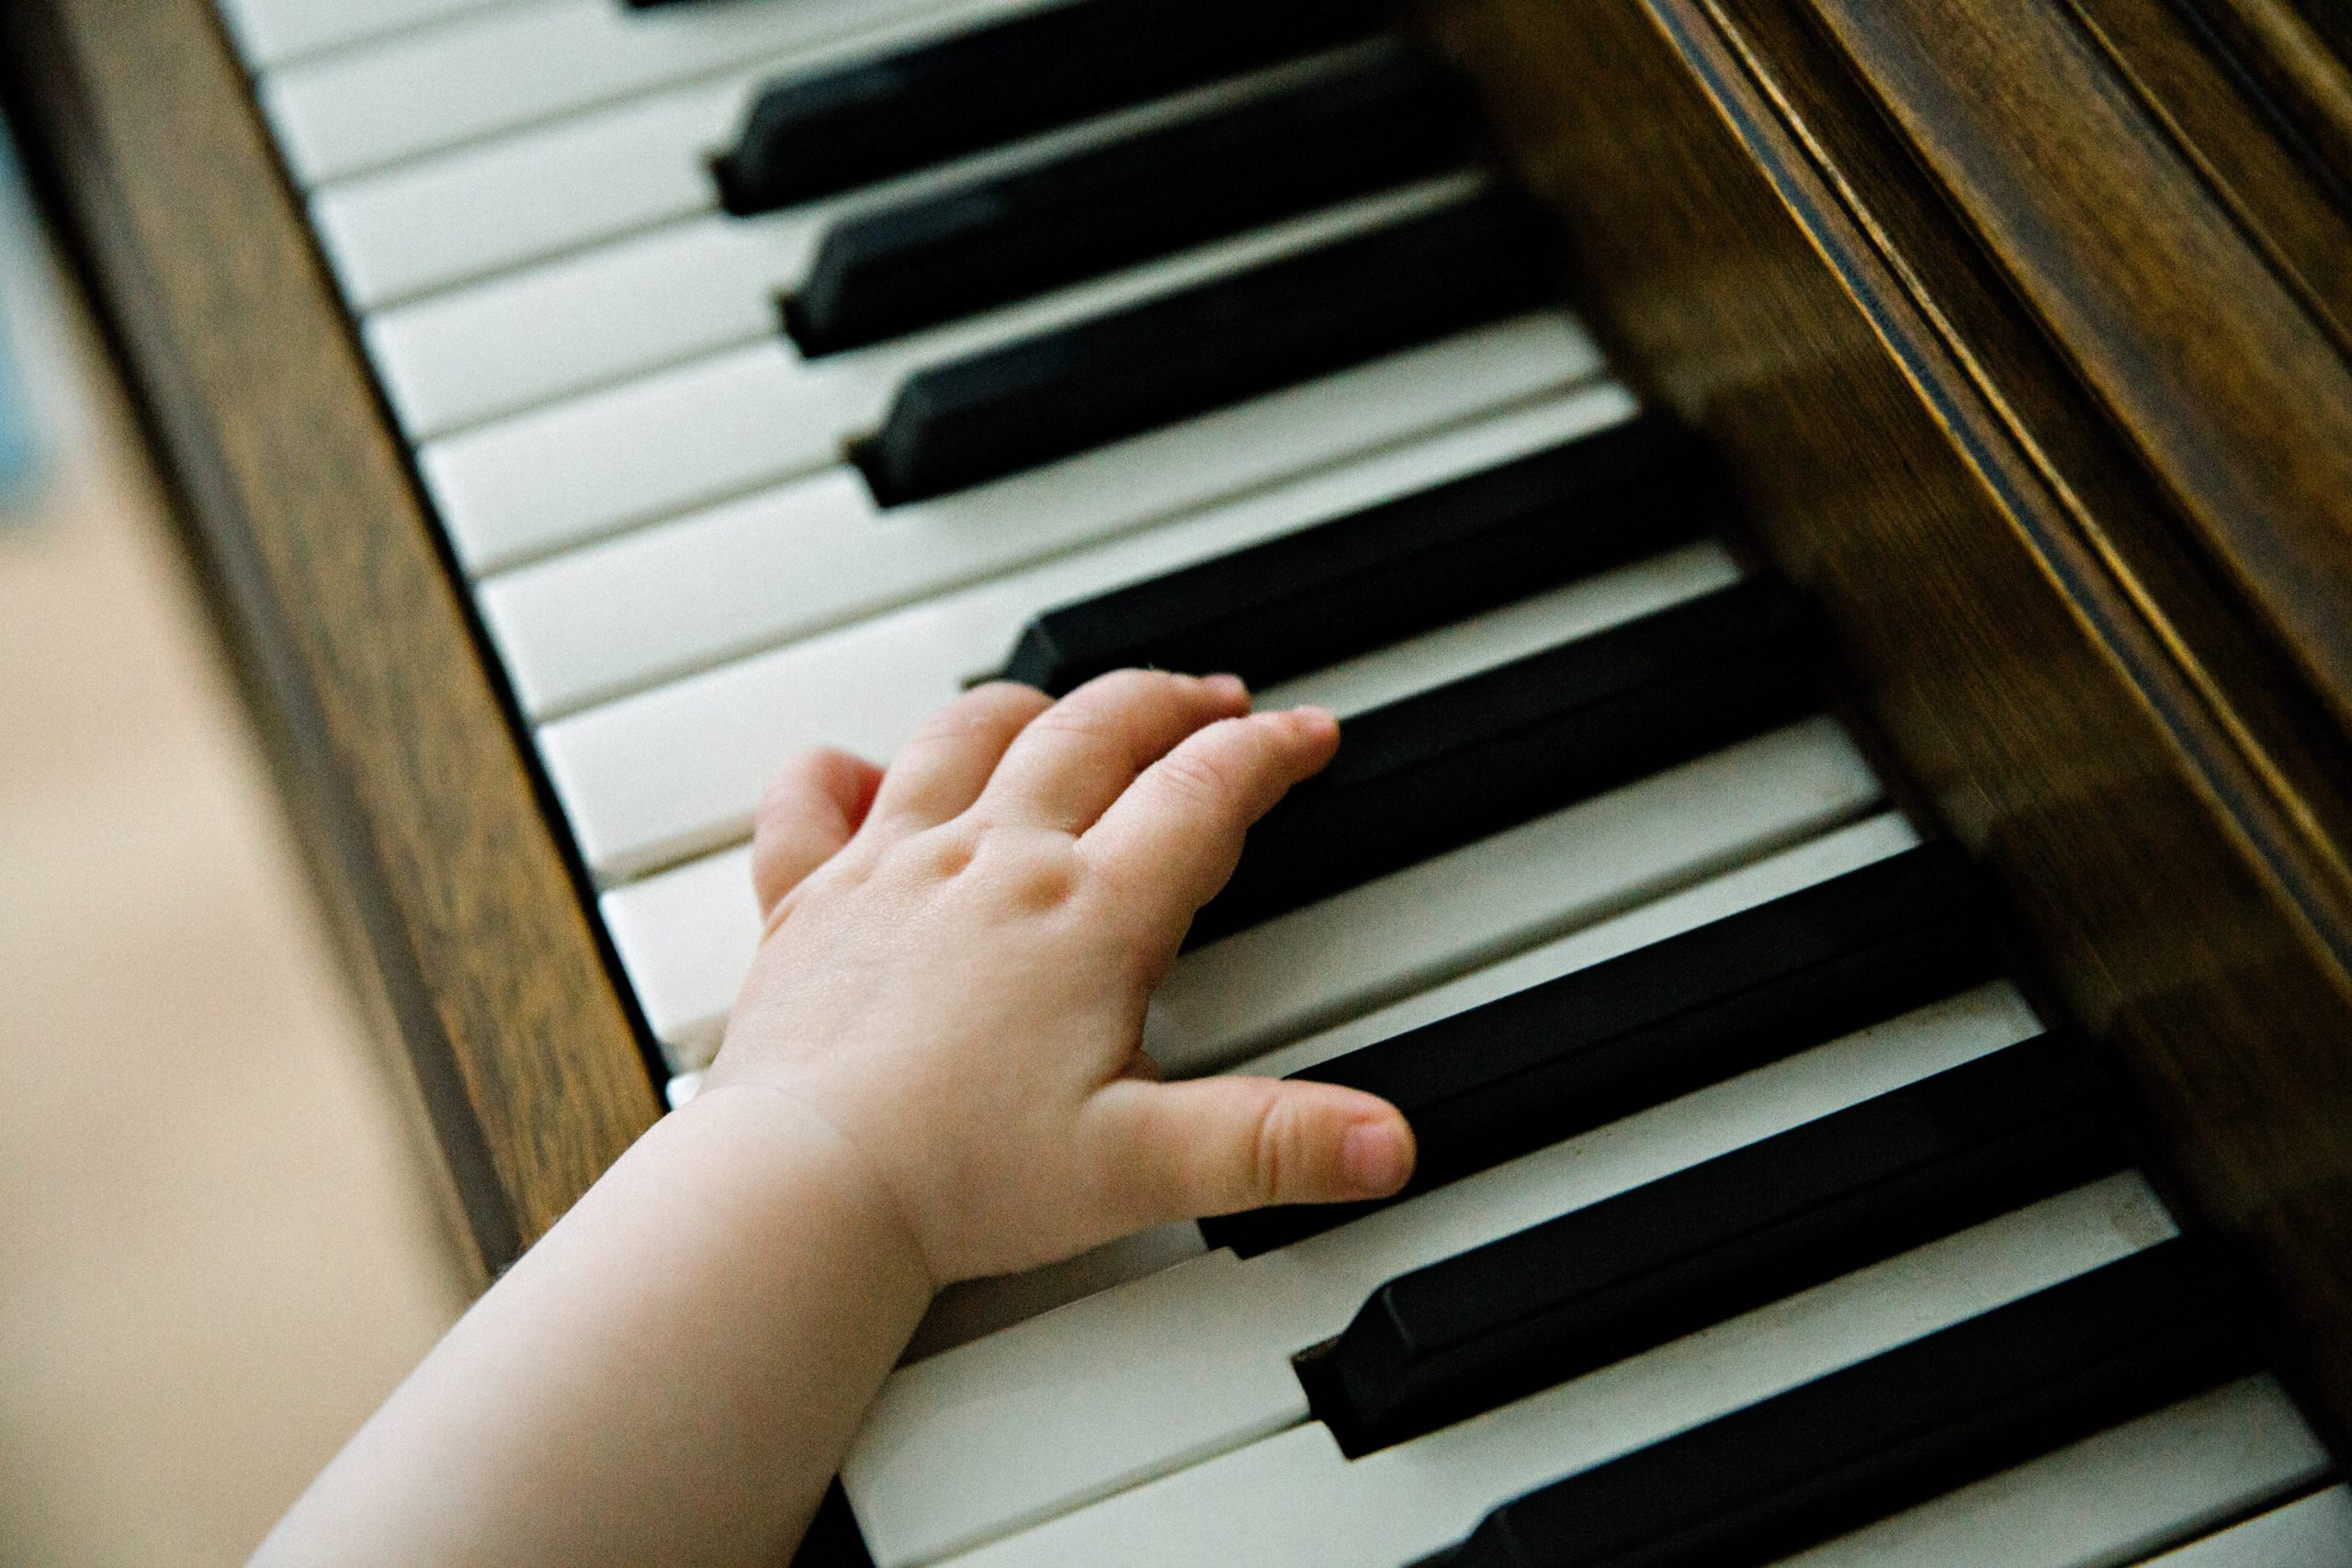 Kinderhände auf klaviertasten